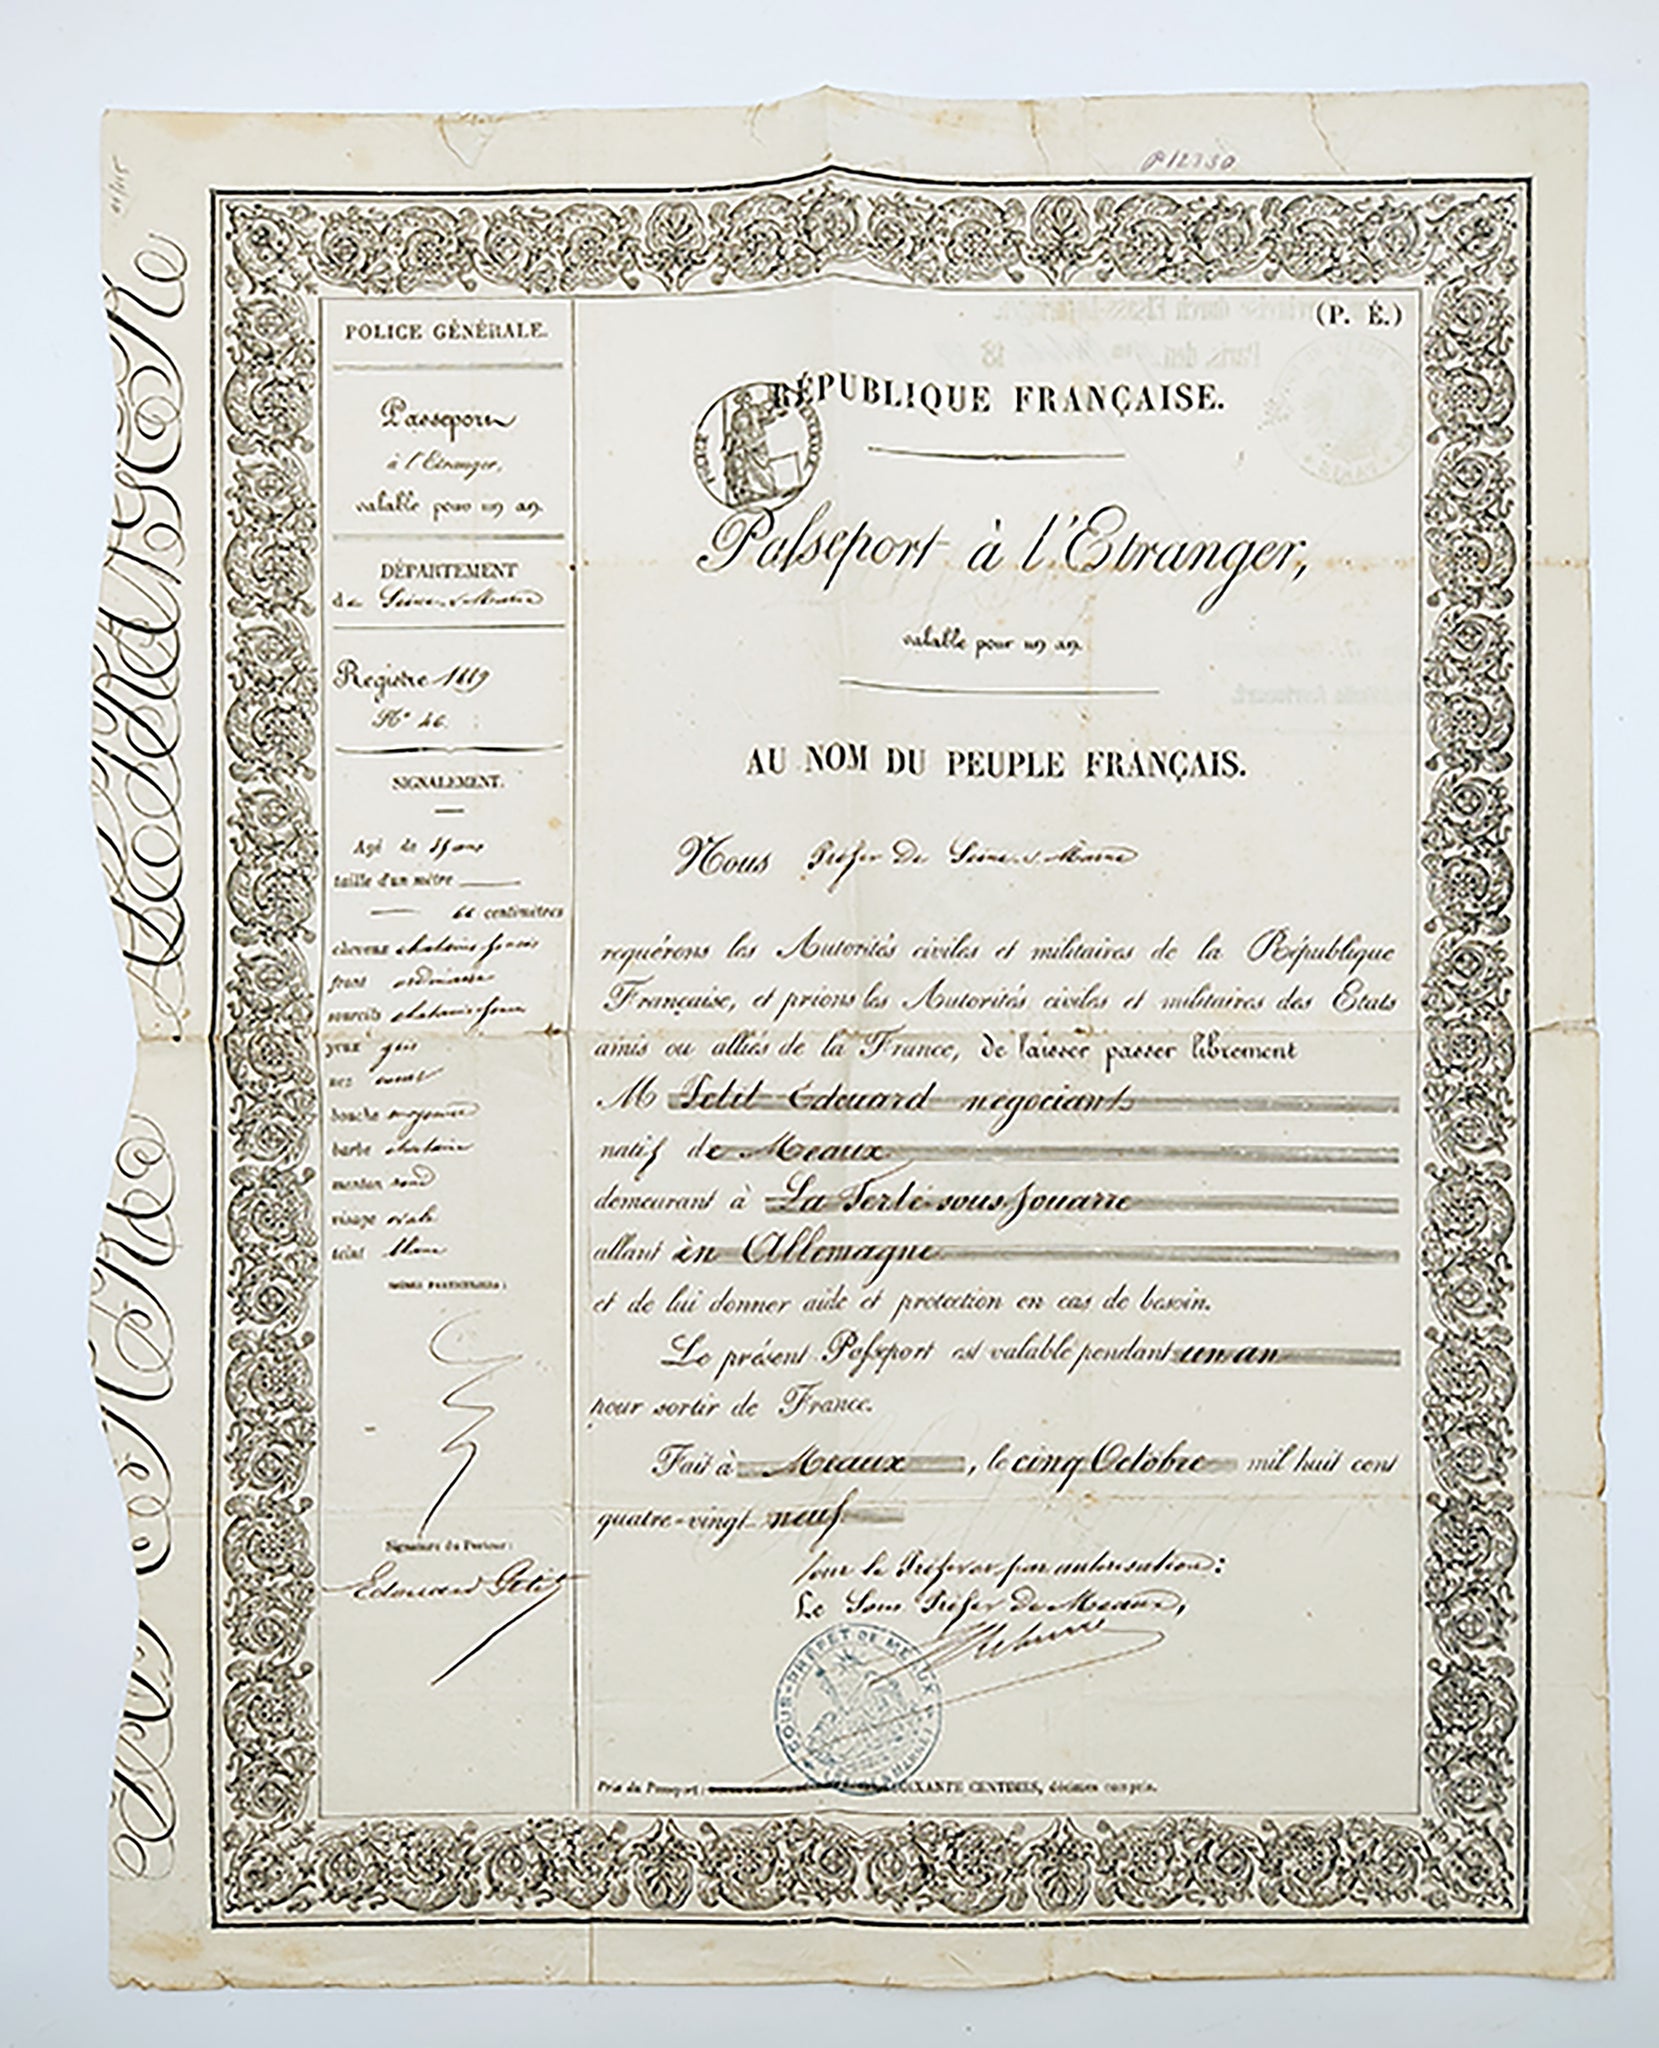 [PASAPORT] 1889 Republique Française Palseport a l'Etranger (Yabancılar için verilen Fransız pasaportu)